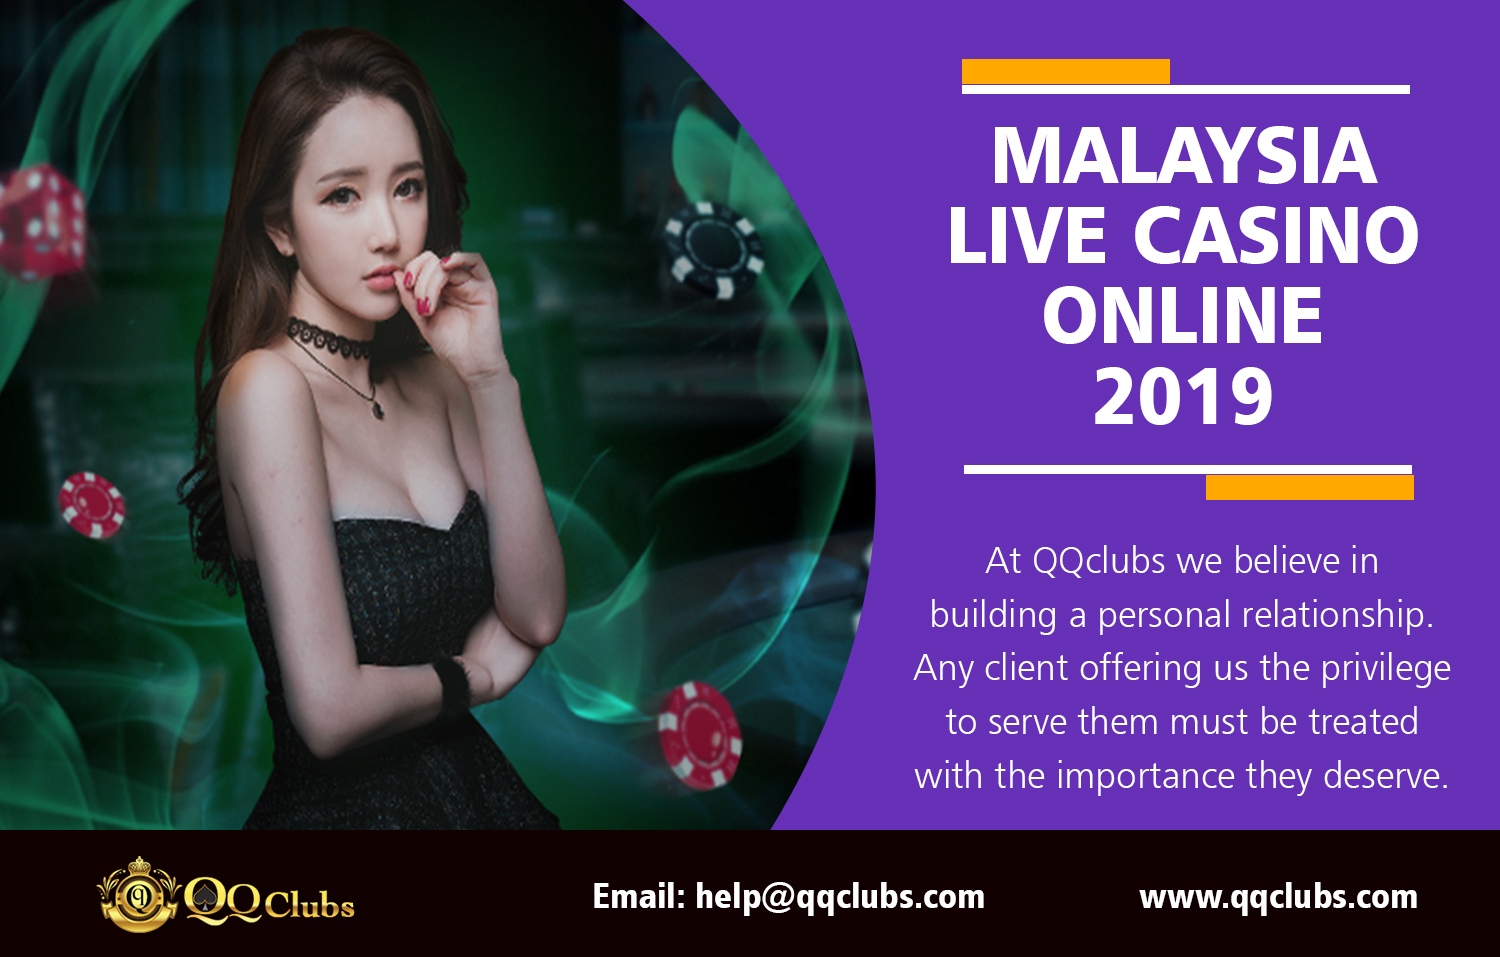 Online casino malaysia post играть на деньги в игровые автоматы вулкан казино